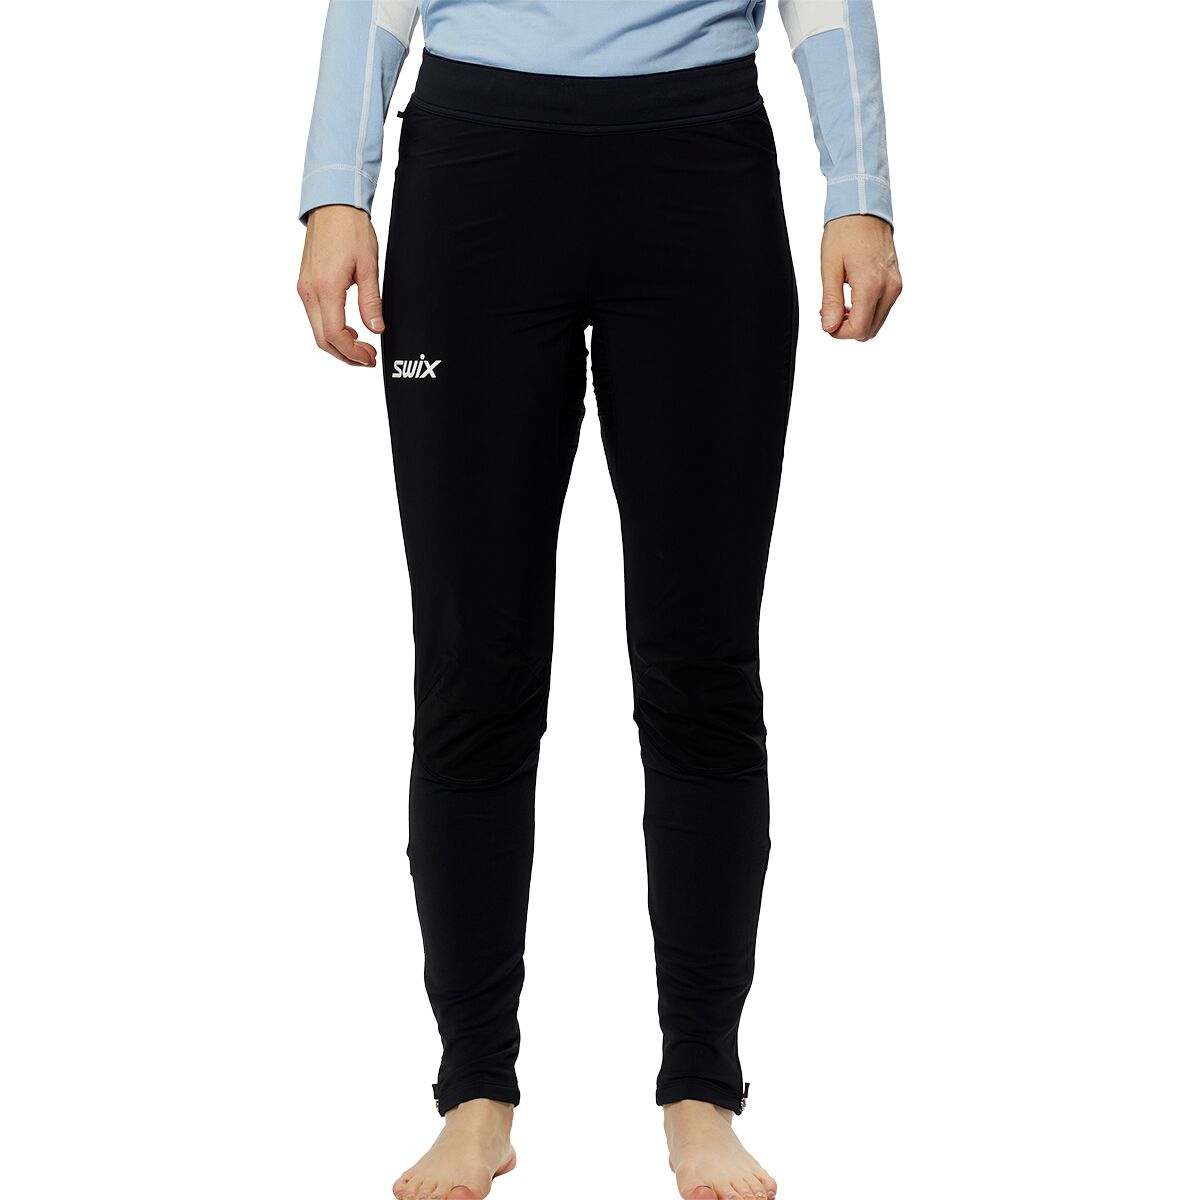 Legging chaud femme Swix Focus - Collants de Ski - Textile Femme - Sports  Hiver